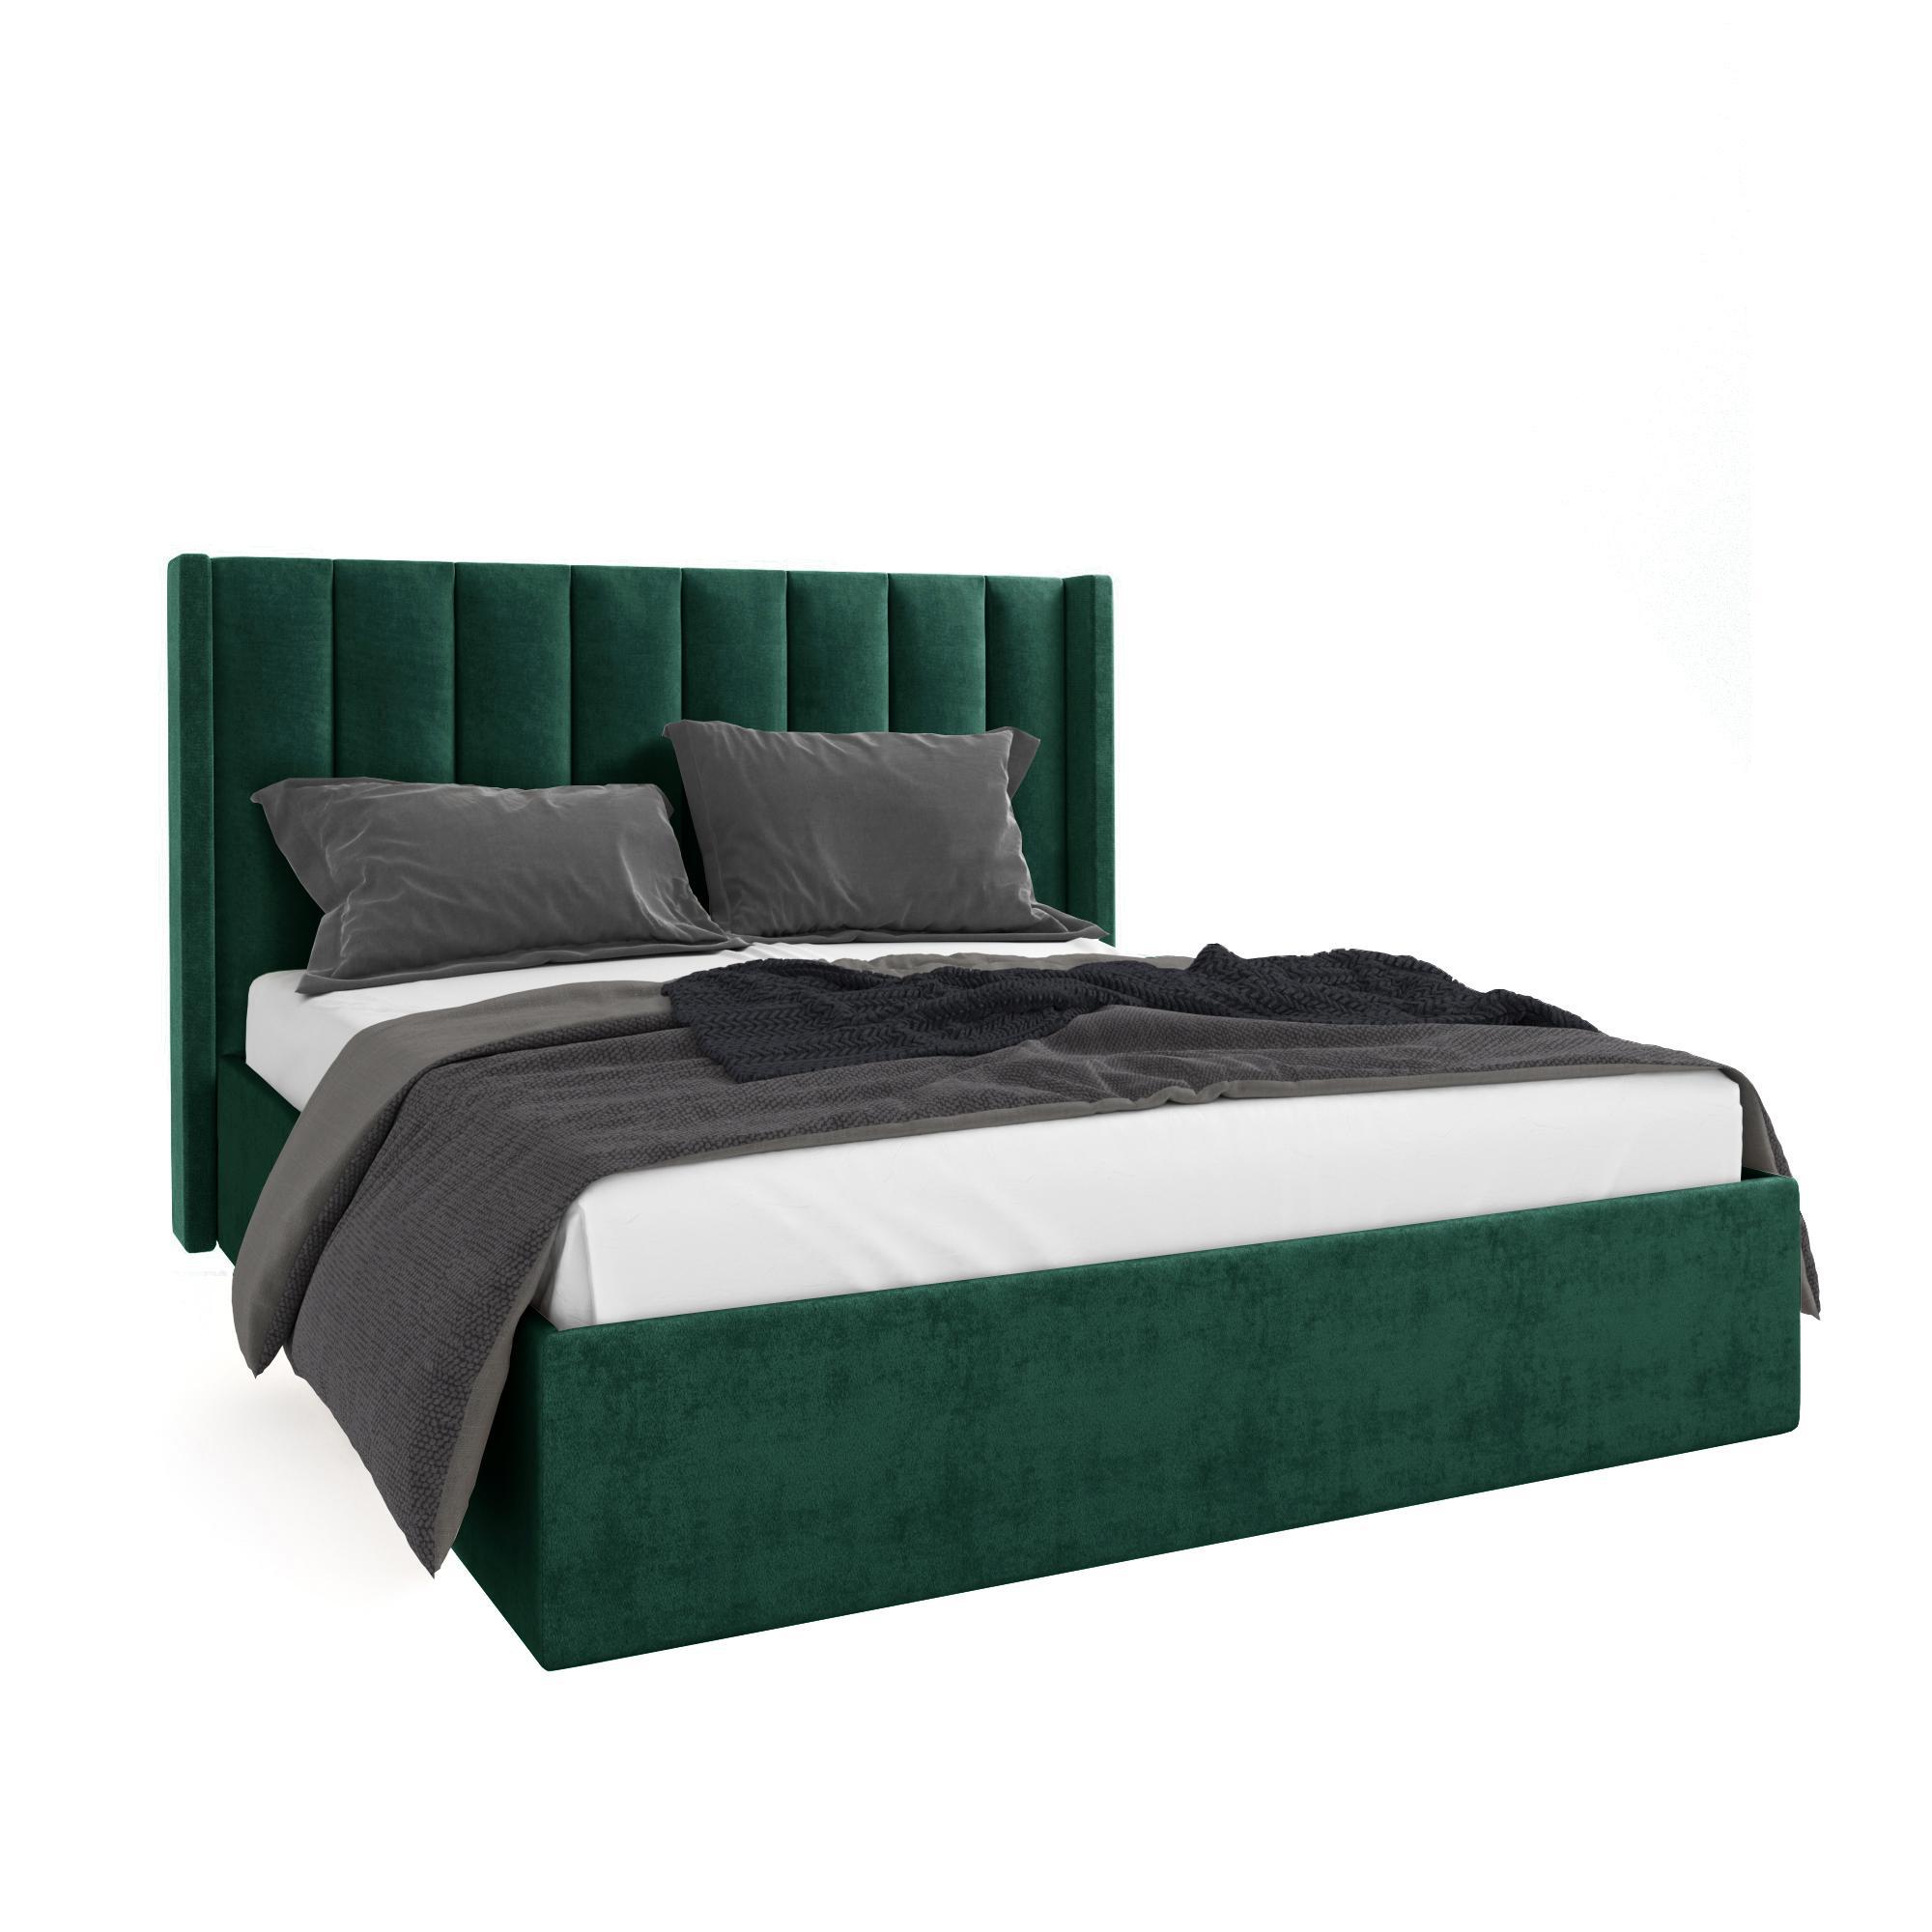 Кровать Жаклиз зеленая 180х200 изображение товара